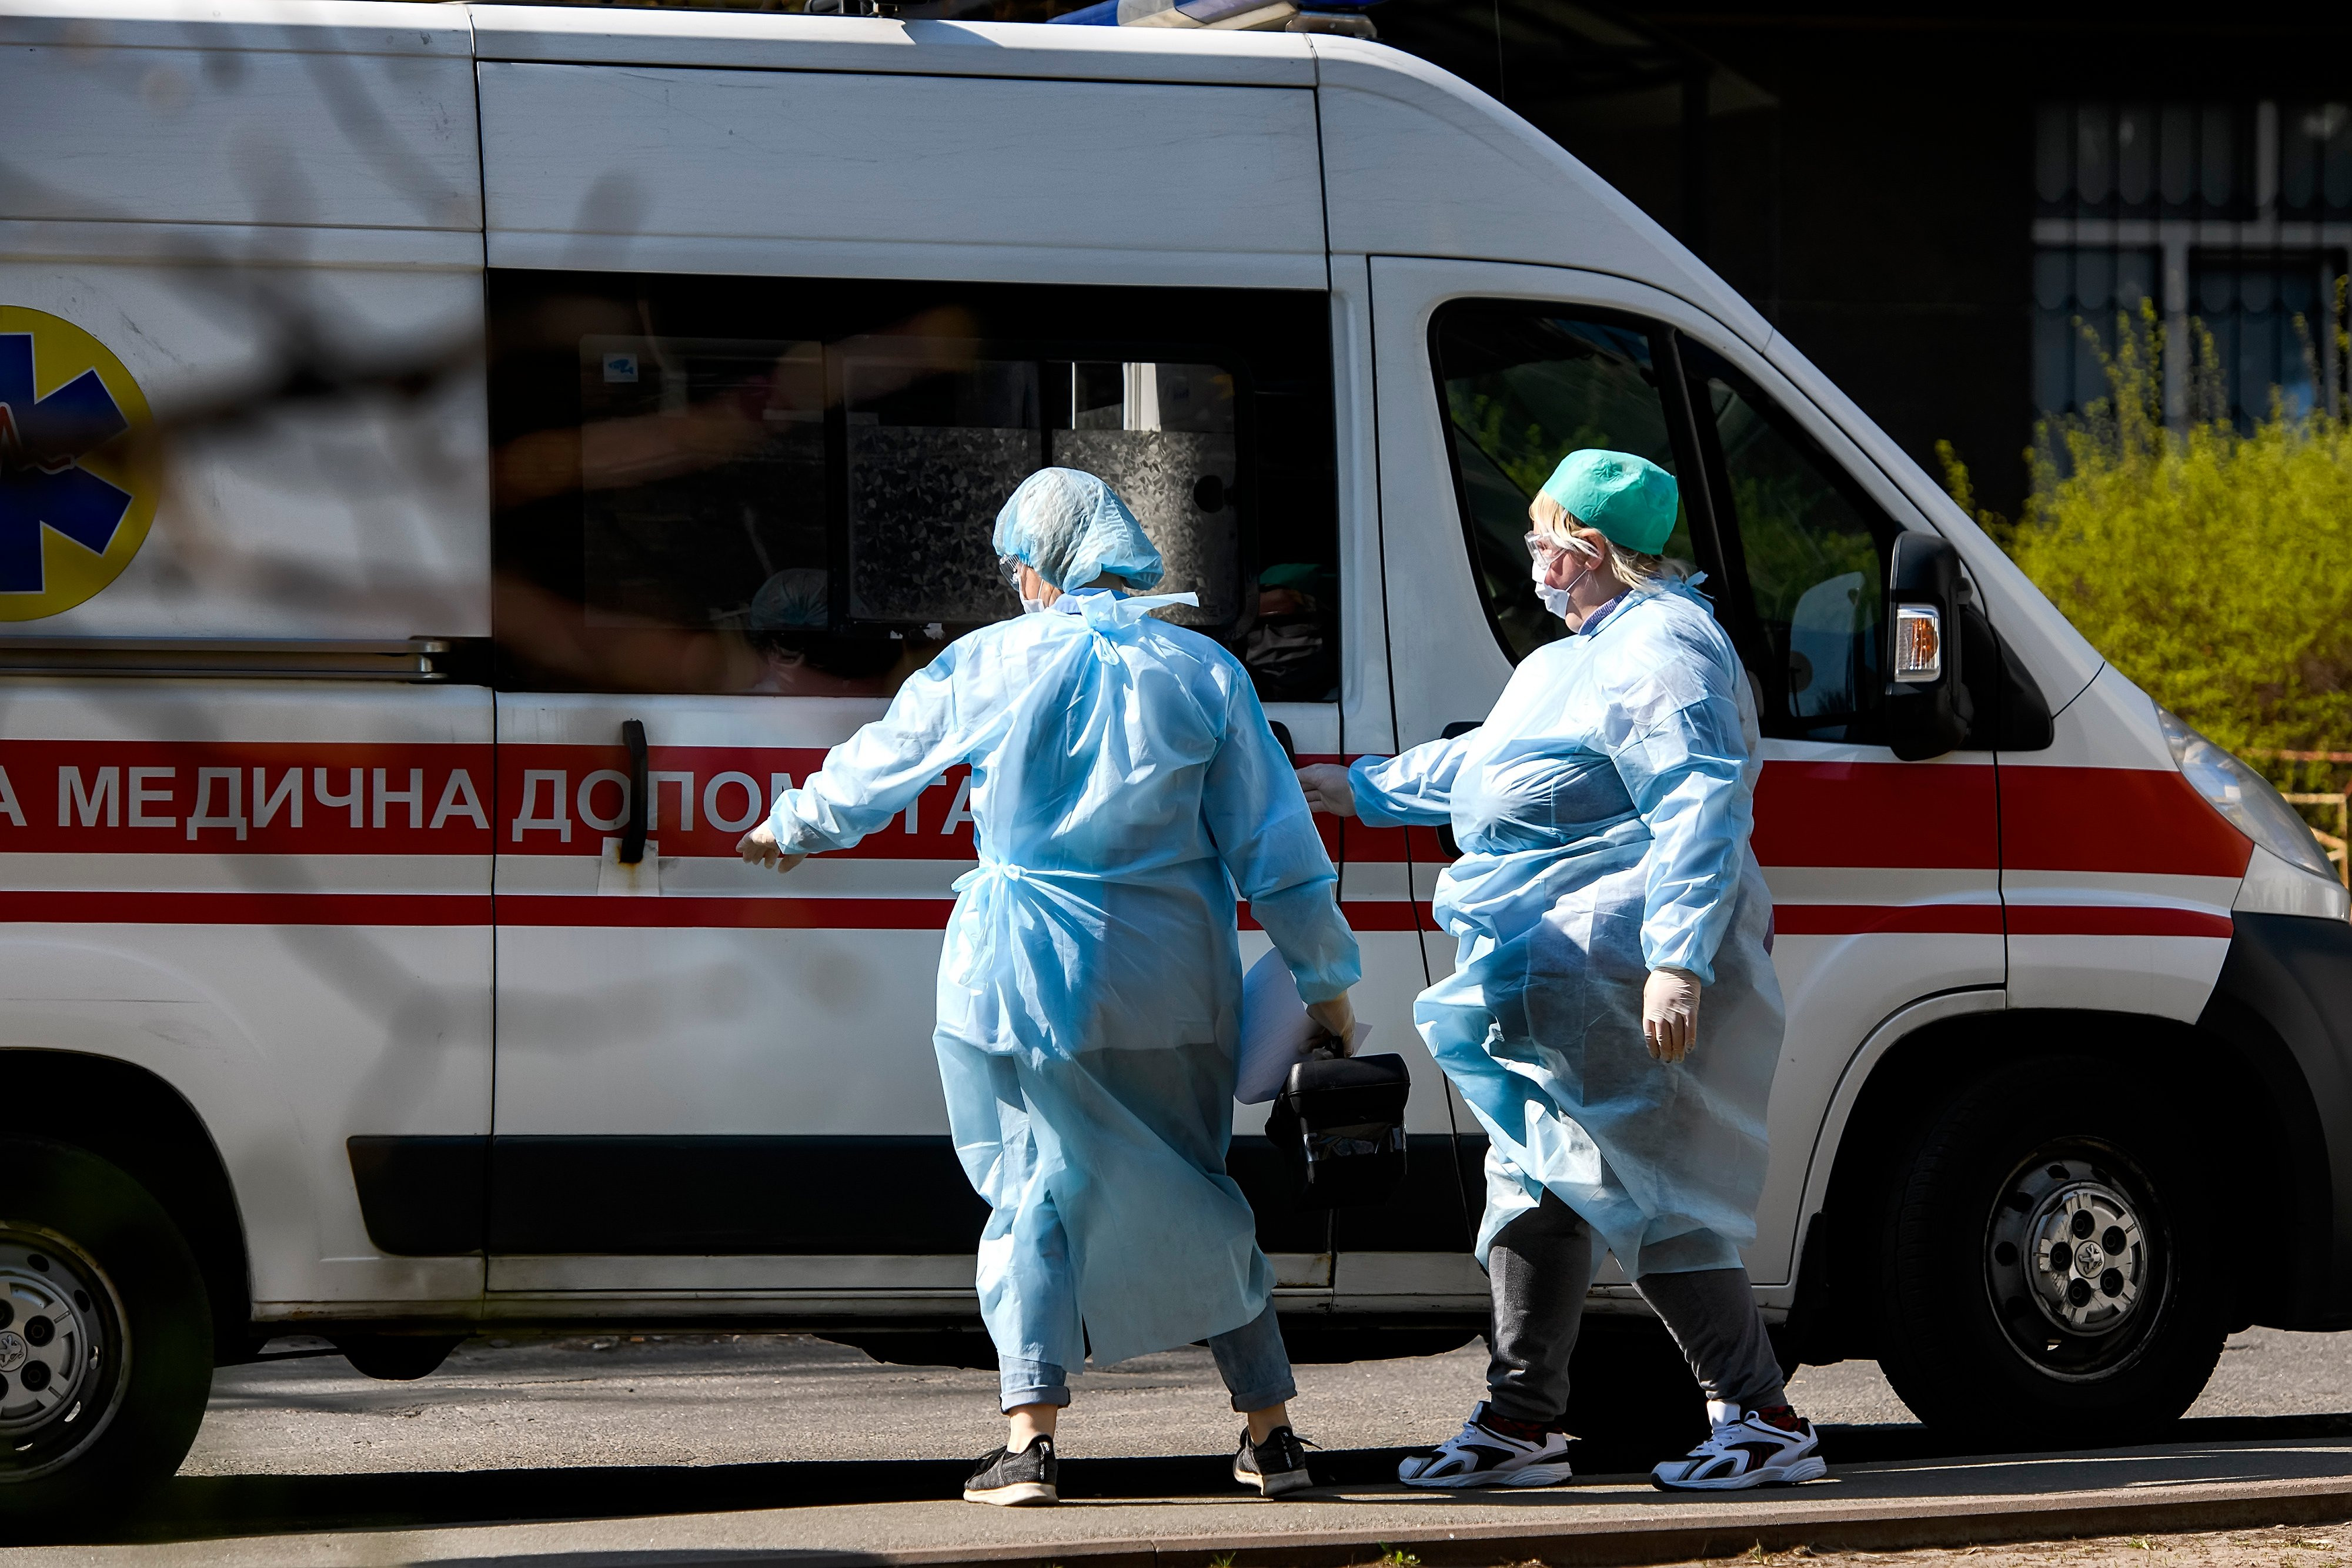 Четверо больных. Врачи догоняют больного. Украинская медицинская пораненного. Украинская медицинская огляда пораненного.